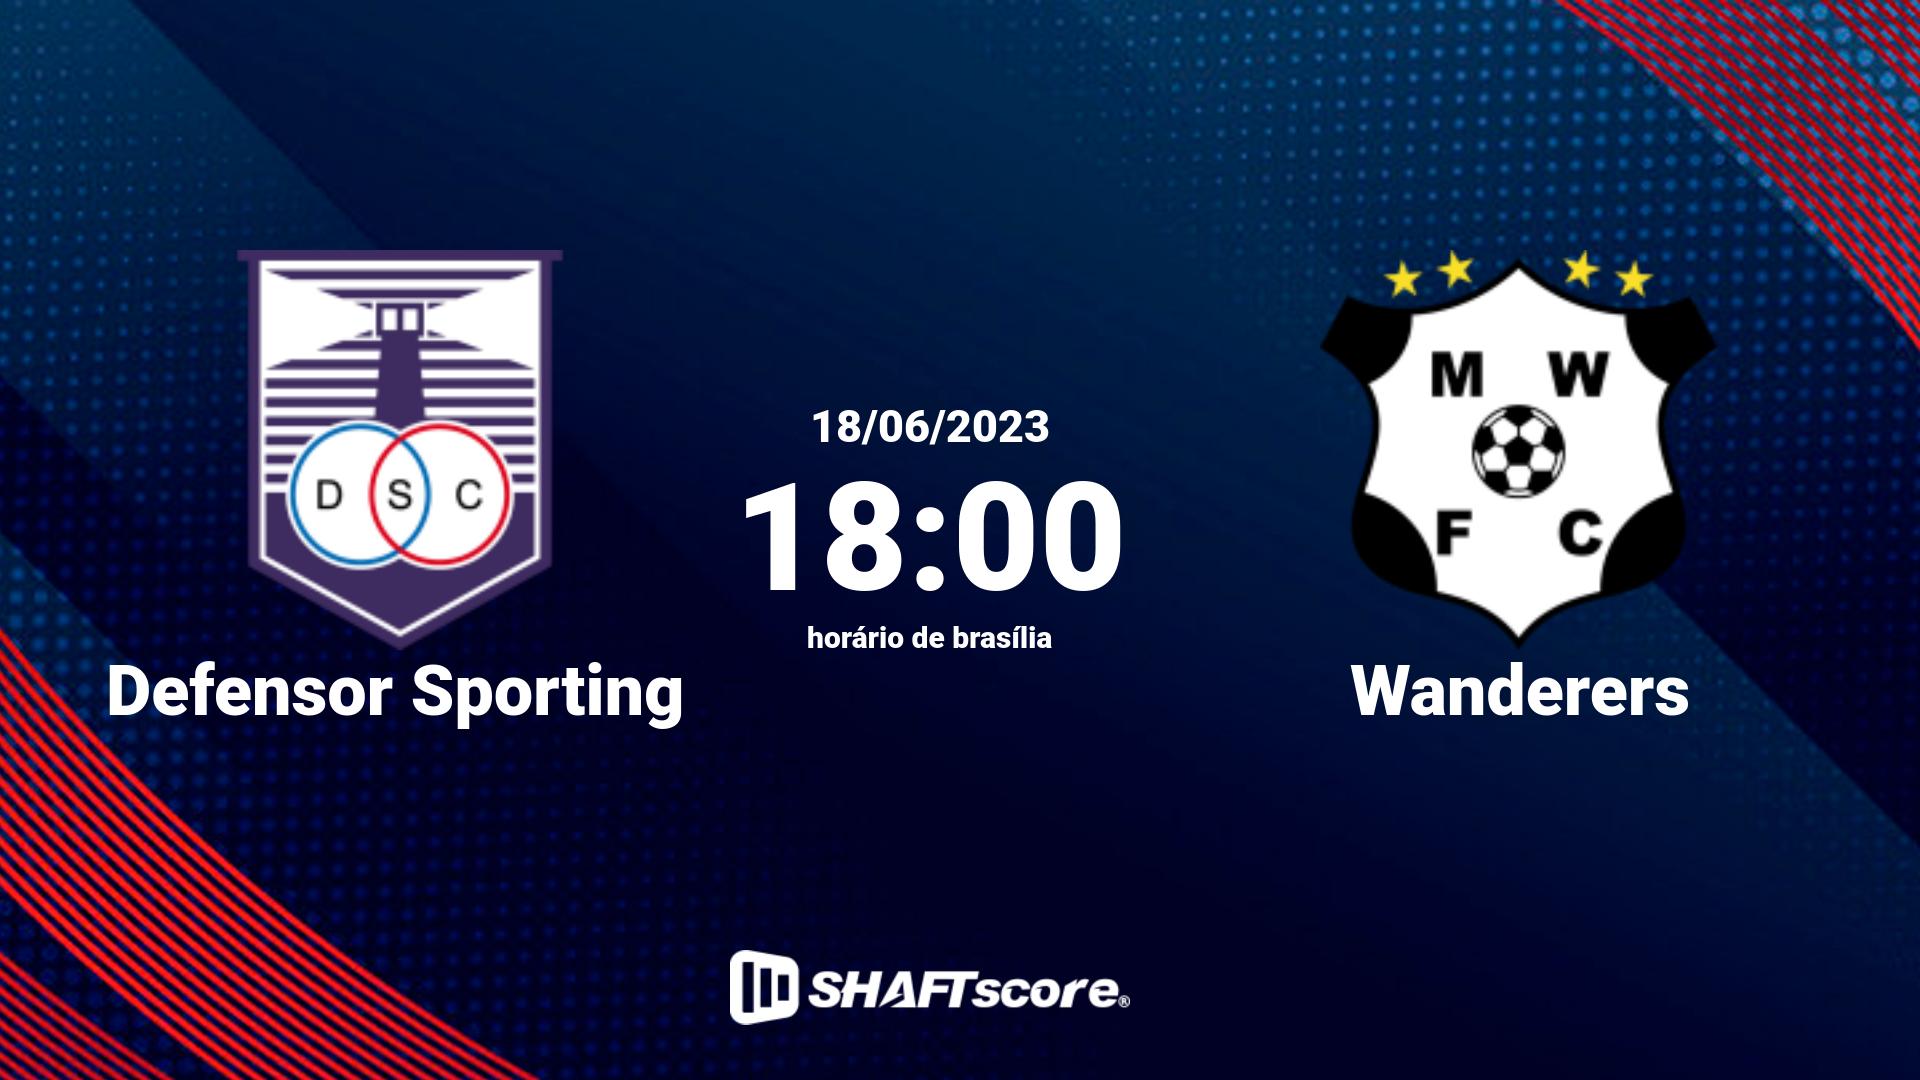 Estatísticas do jogo Defensor Sporting vs Wanderers 18.06 18:00